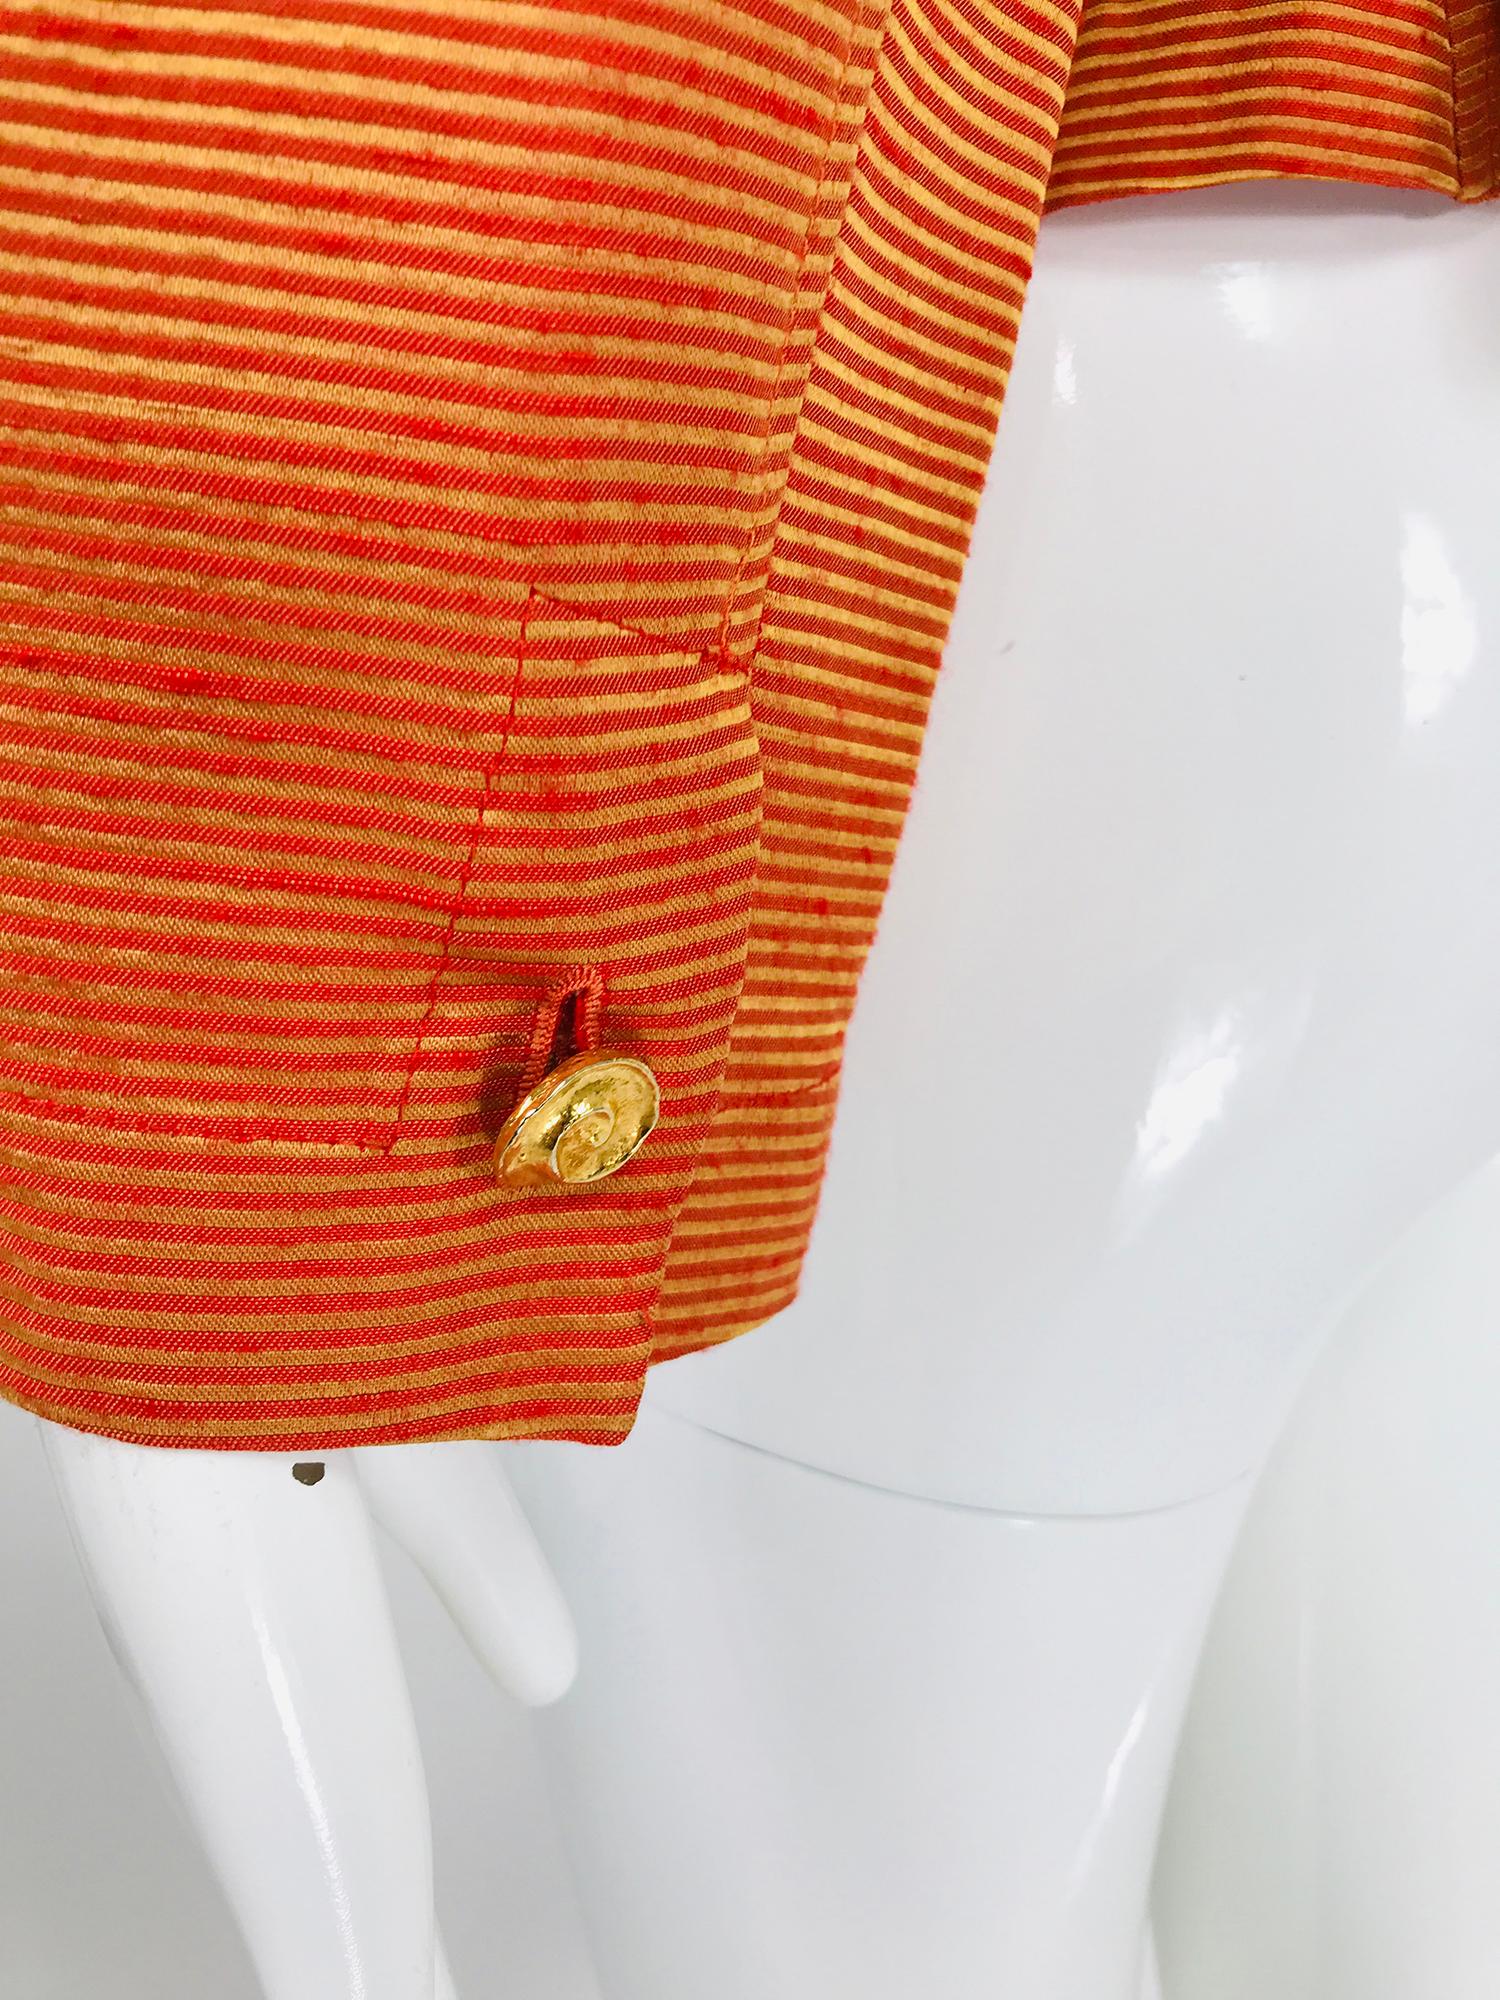 Yves Saint Rive Gauche Orange & Gold Stripe Faille Jacket Vintage For Sale 2